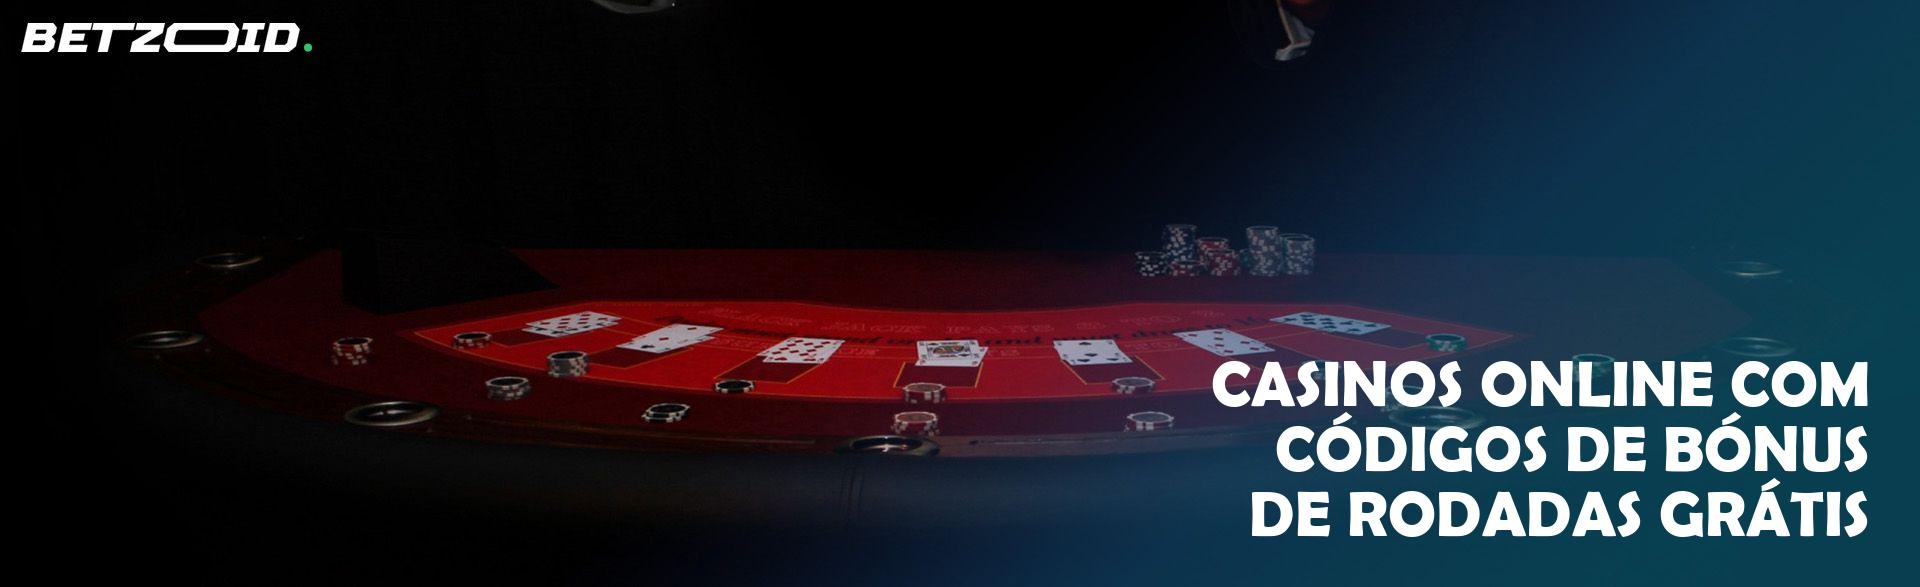 Casinos Online com Códigos de Bónus de Rodadas Grátis.